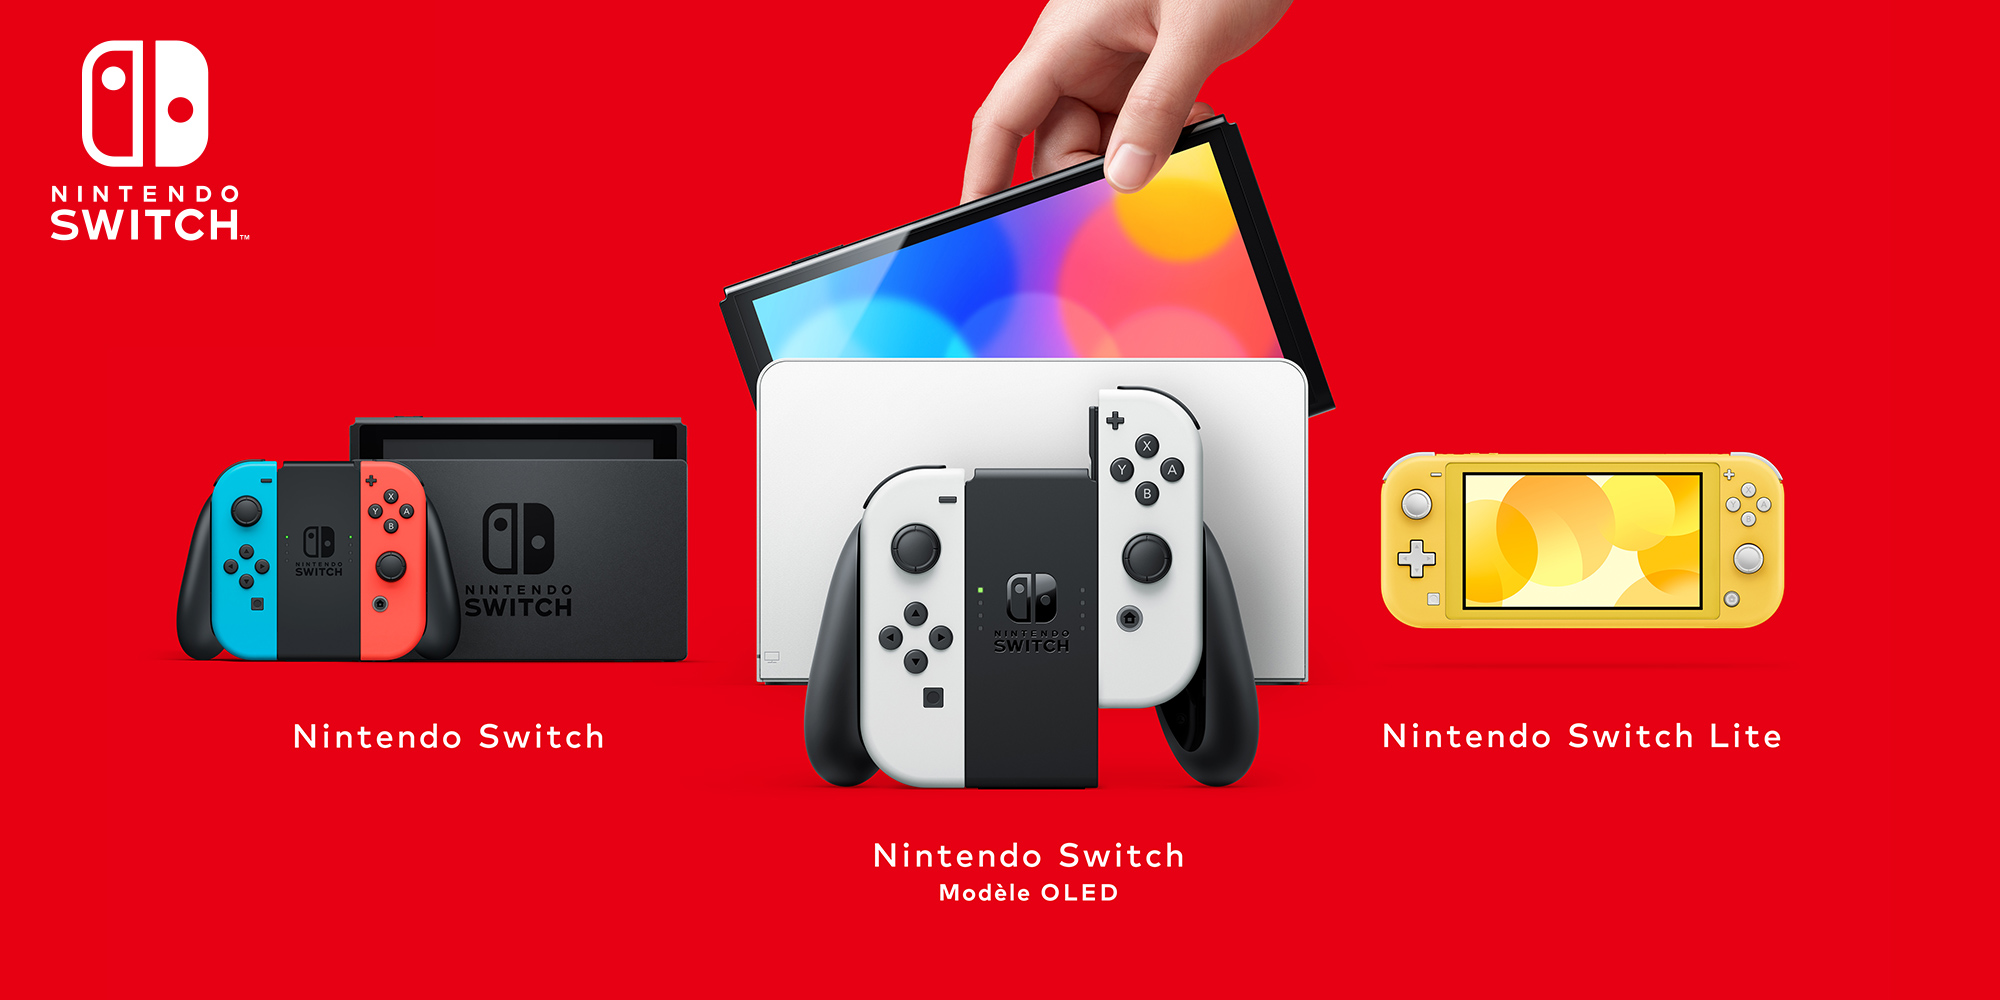 Vous venez de recevoir une Nintendo Switch ? Découvrez certaines fonctionnalités clés de votre console !